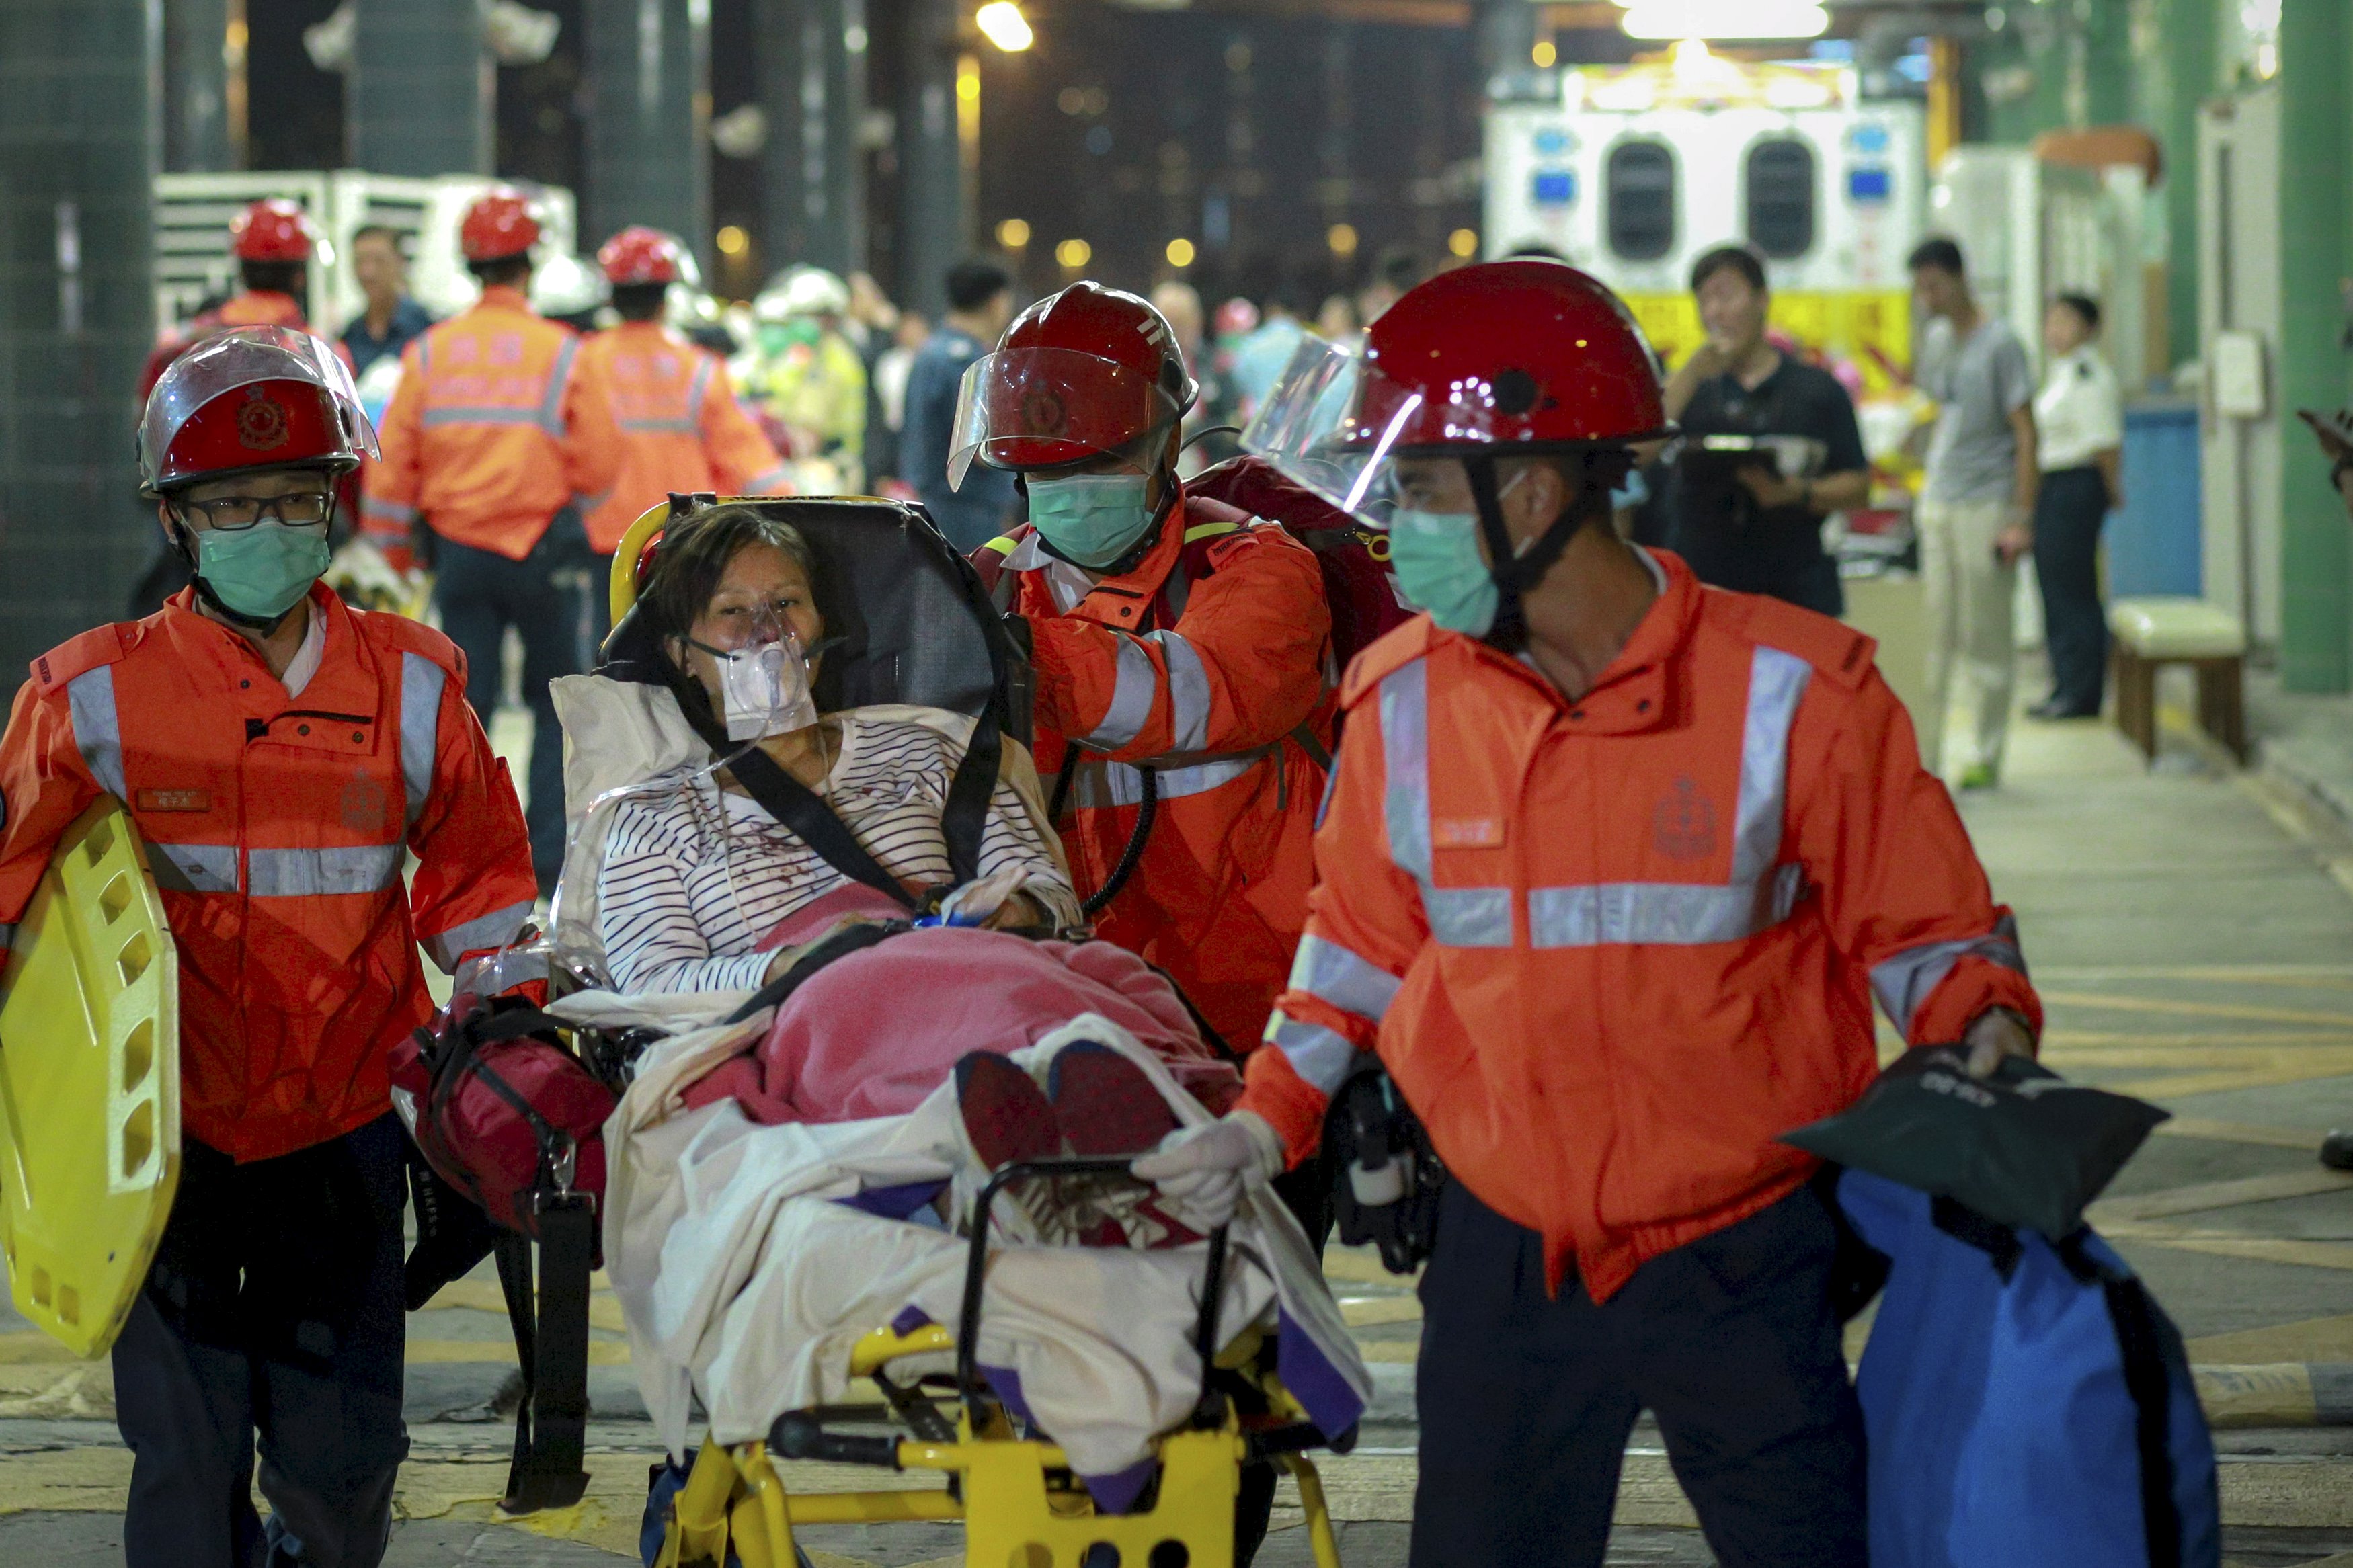 Seorang penumpang kapal feri yang terluka ditemani oleh penyelamat setelah tiba di pantai di Hong Kong, Tiongkok, Minggu (25/10). Sekitar 100 orang terluka pada hari Minggu saat kapal feri dari Macau ke Hong Kong bertabrakan dengan benda yang tidak diketahui, menurut pernyataan dari polisi. REUTERS/Stringer.